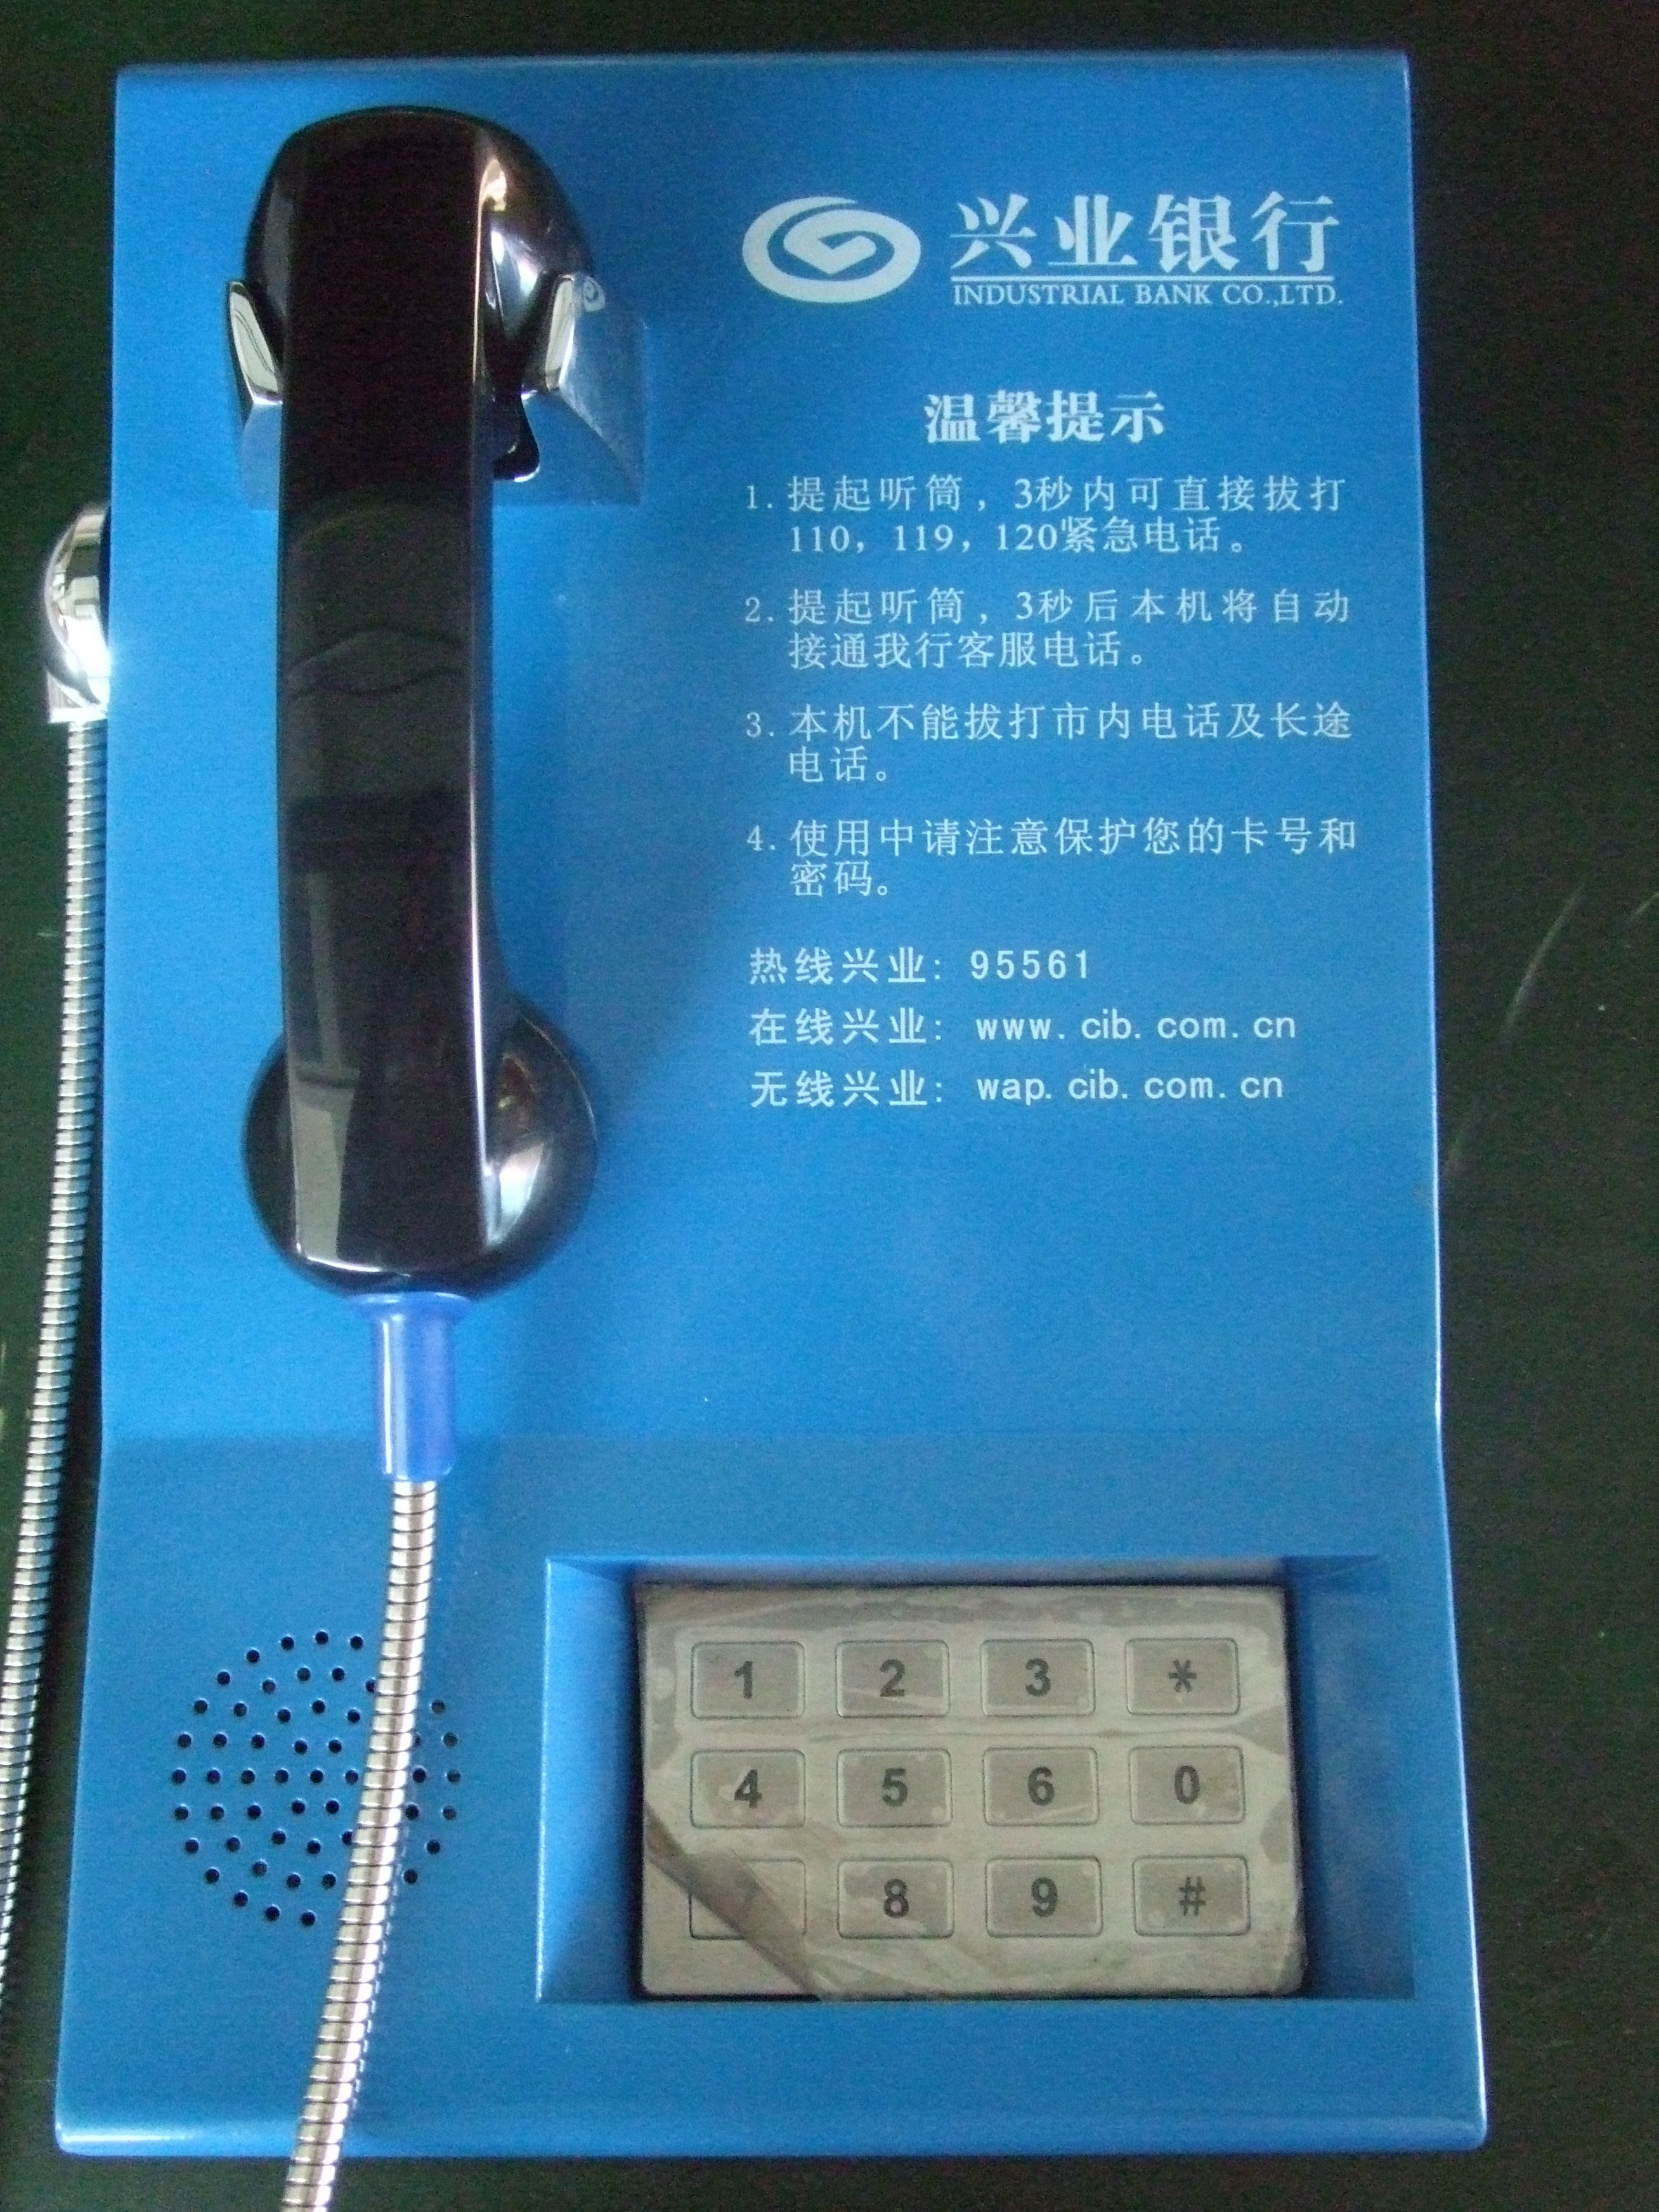  Public analogue telephone 